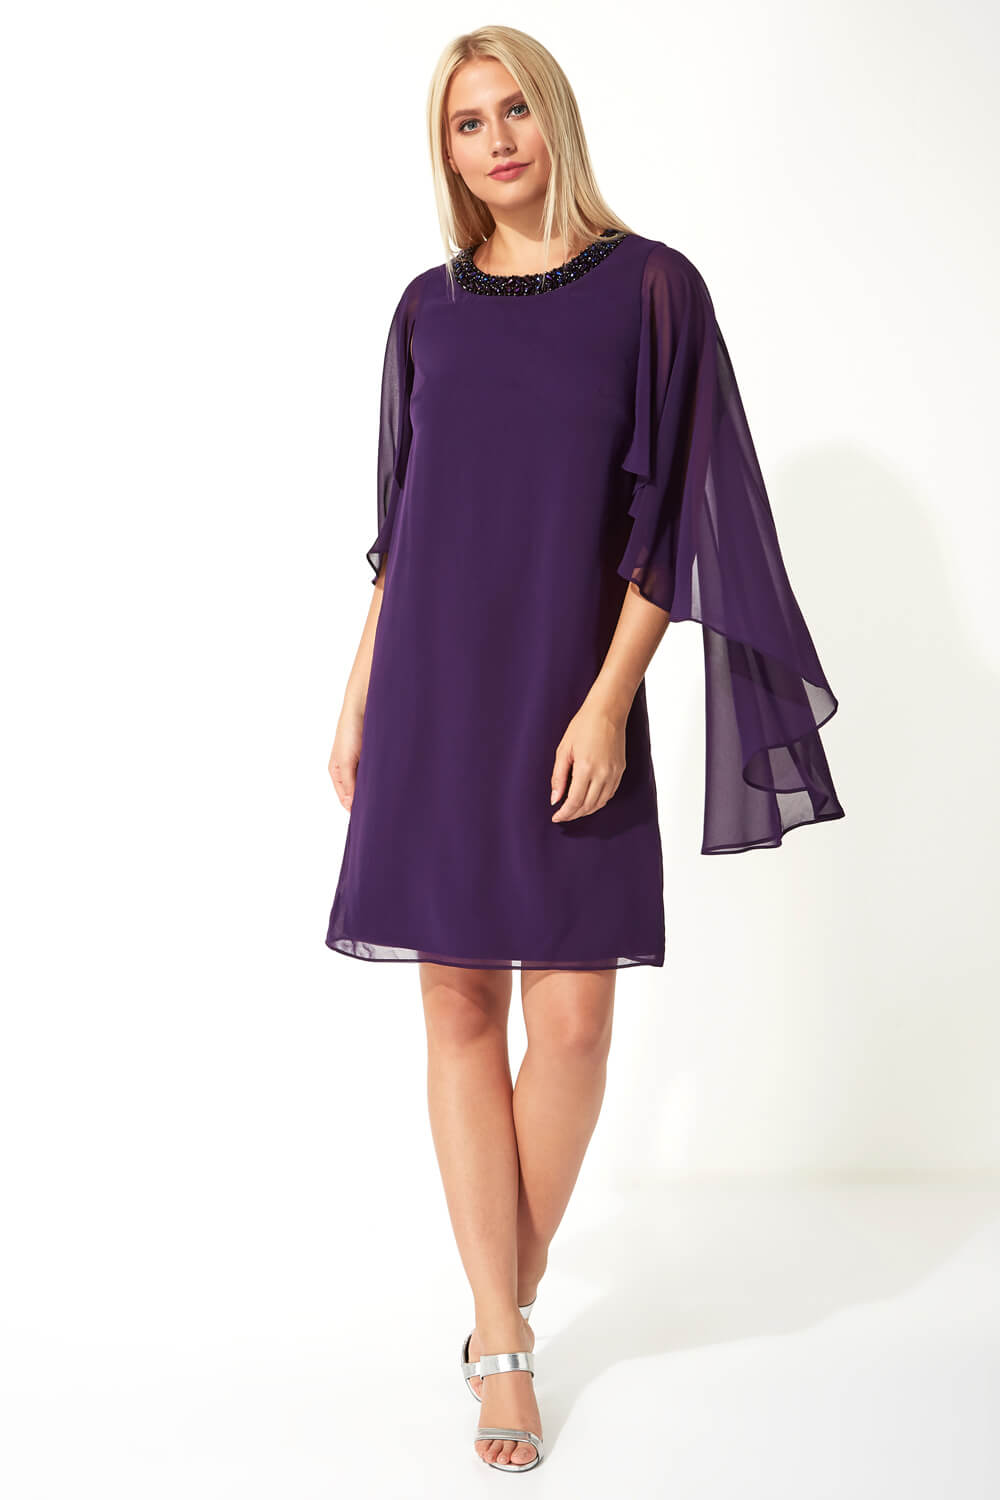 Purple Embellished Trim Chiffon Dress, Image 2 of 5